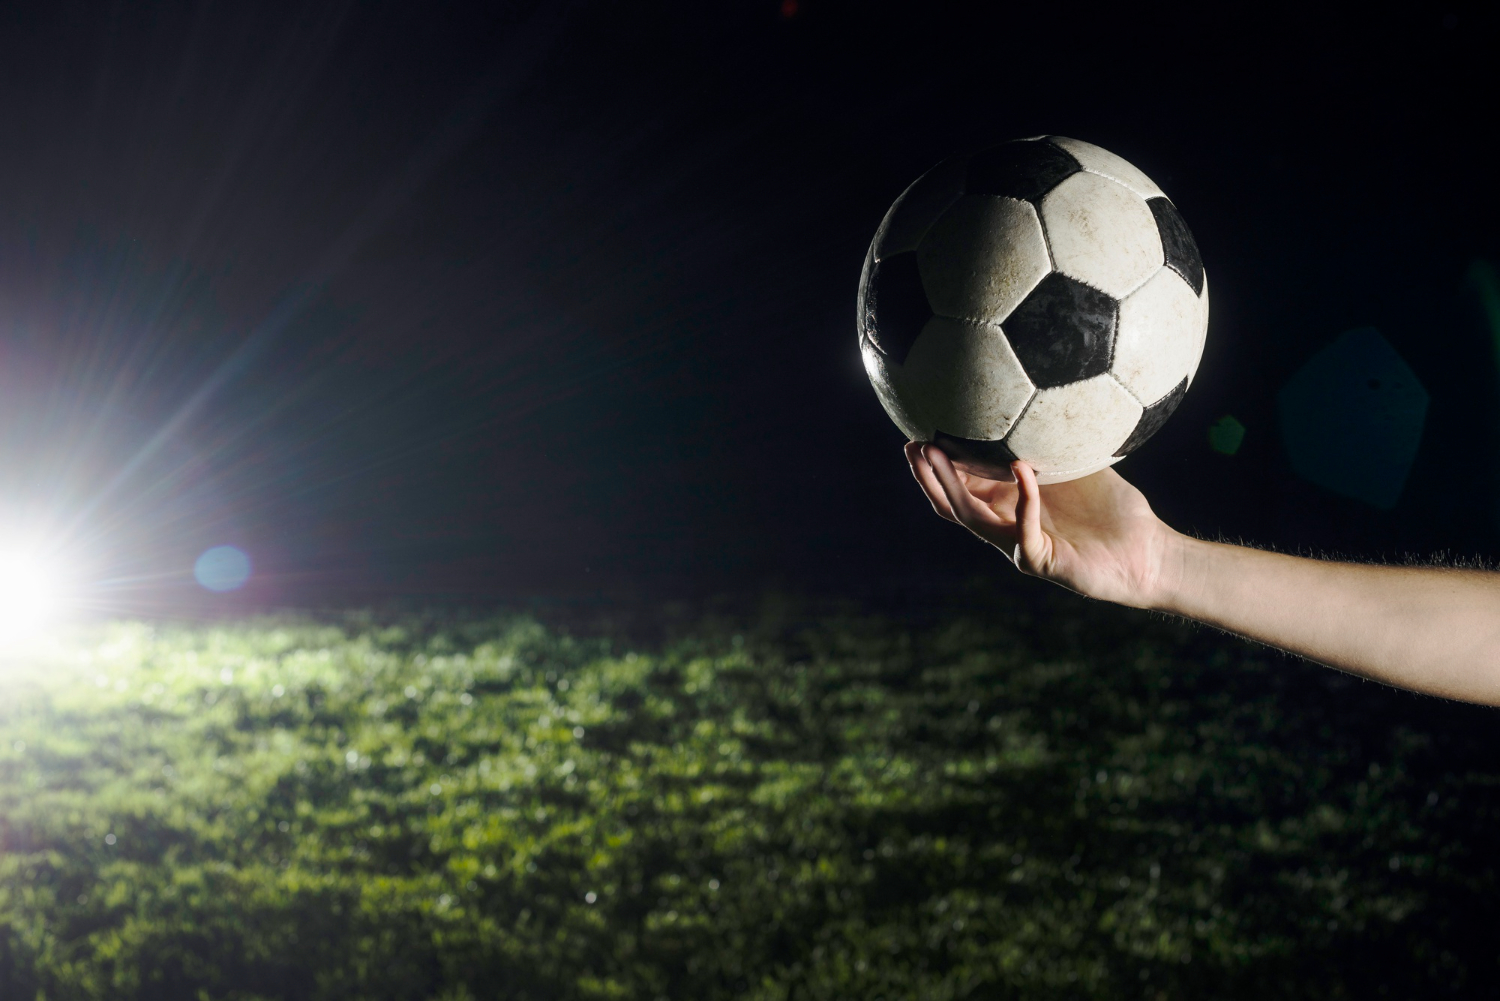 Ghi điểm lớn: Hướng dẫn cá cược bóng đá cho người mới bắt đầu